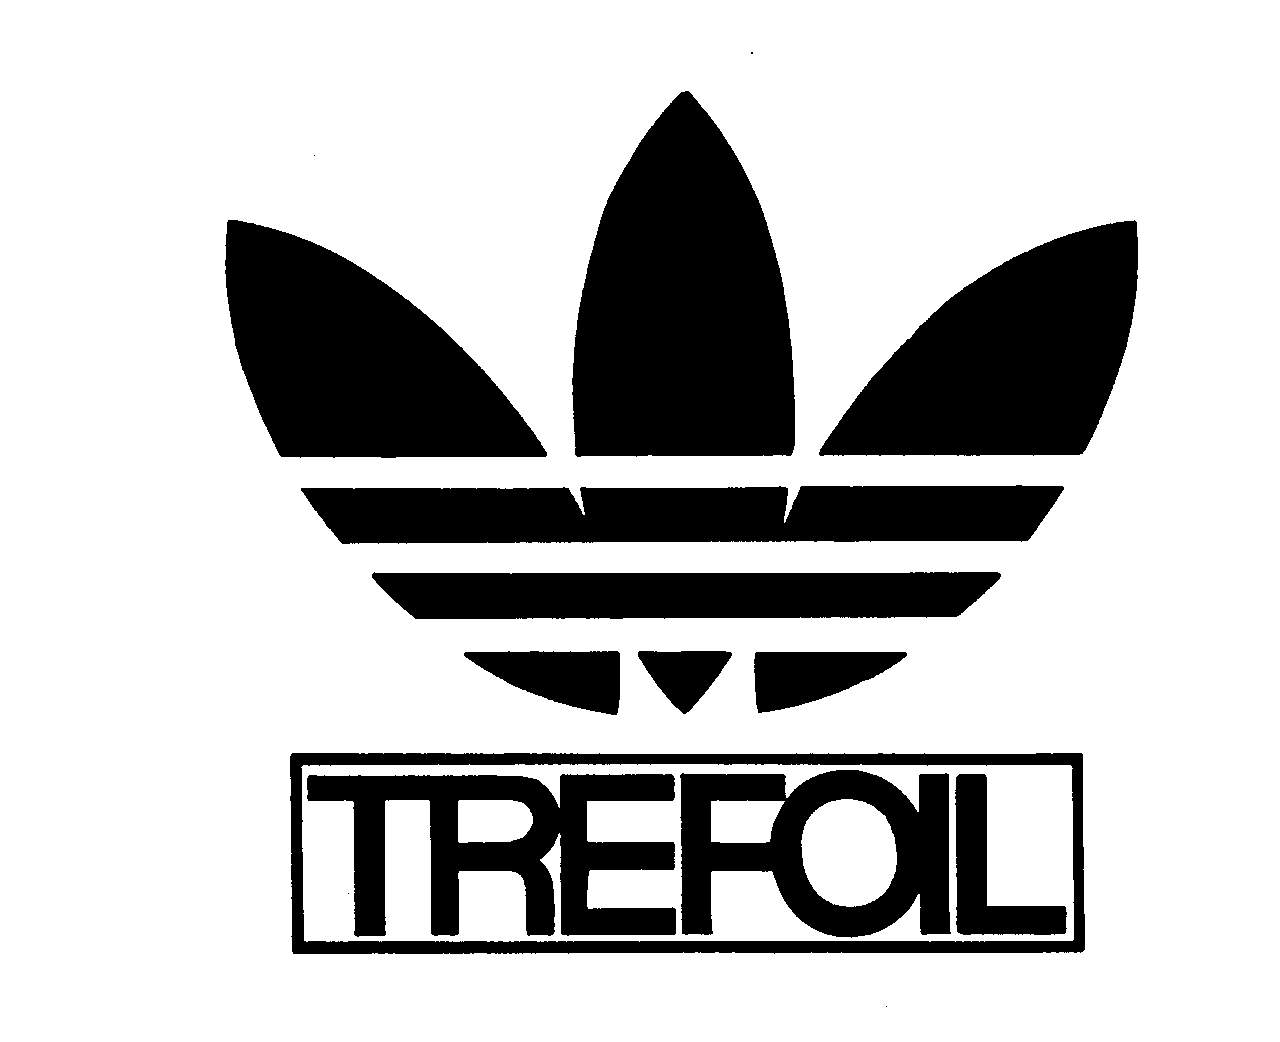 Trademark Logo TREFOIL